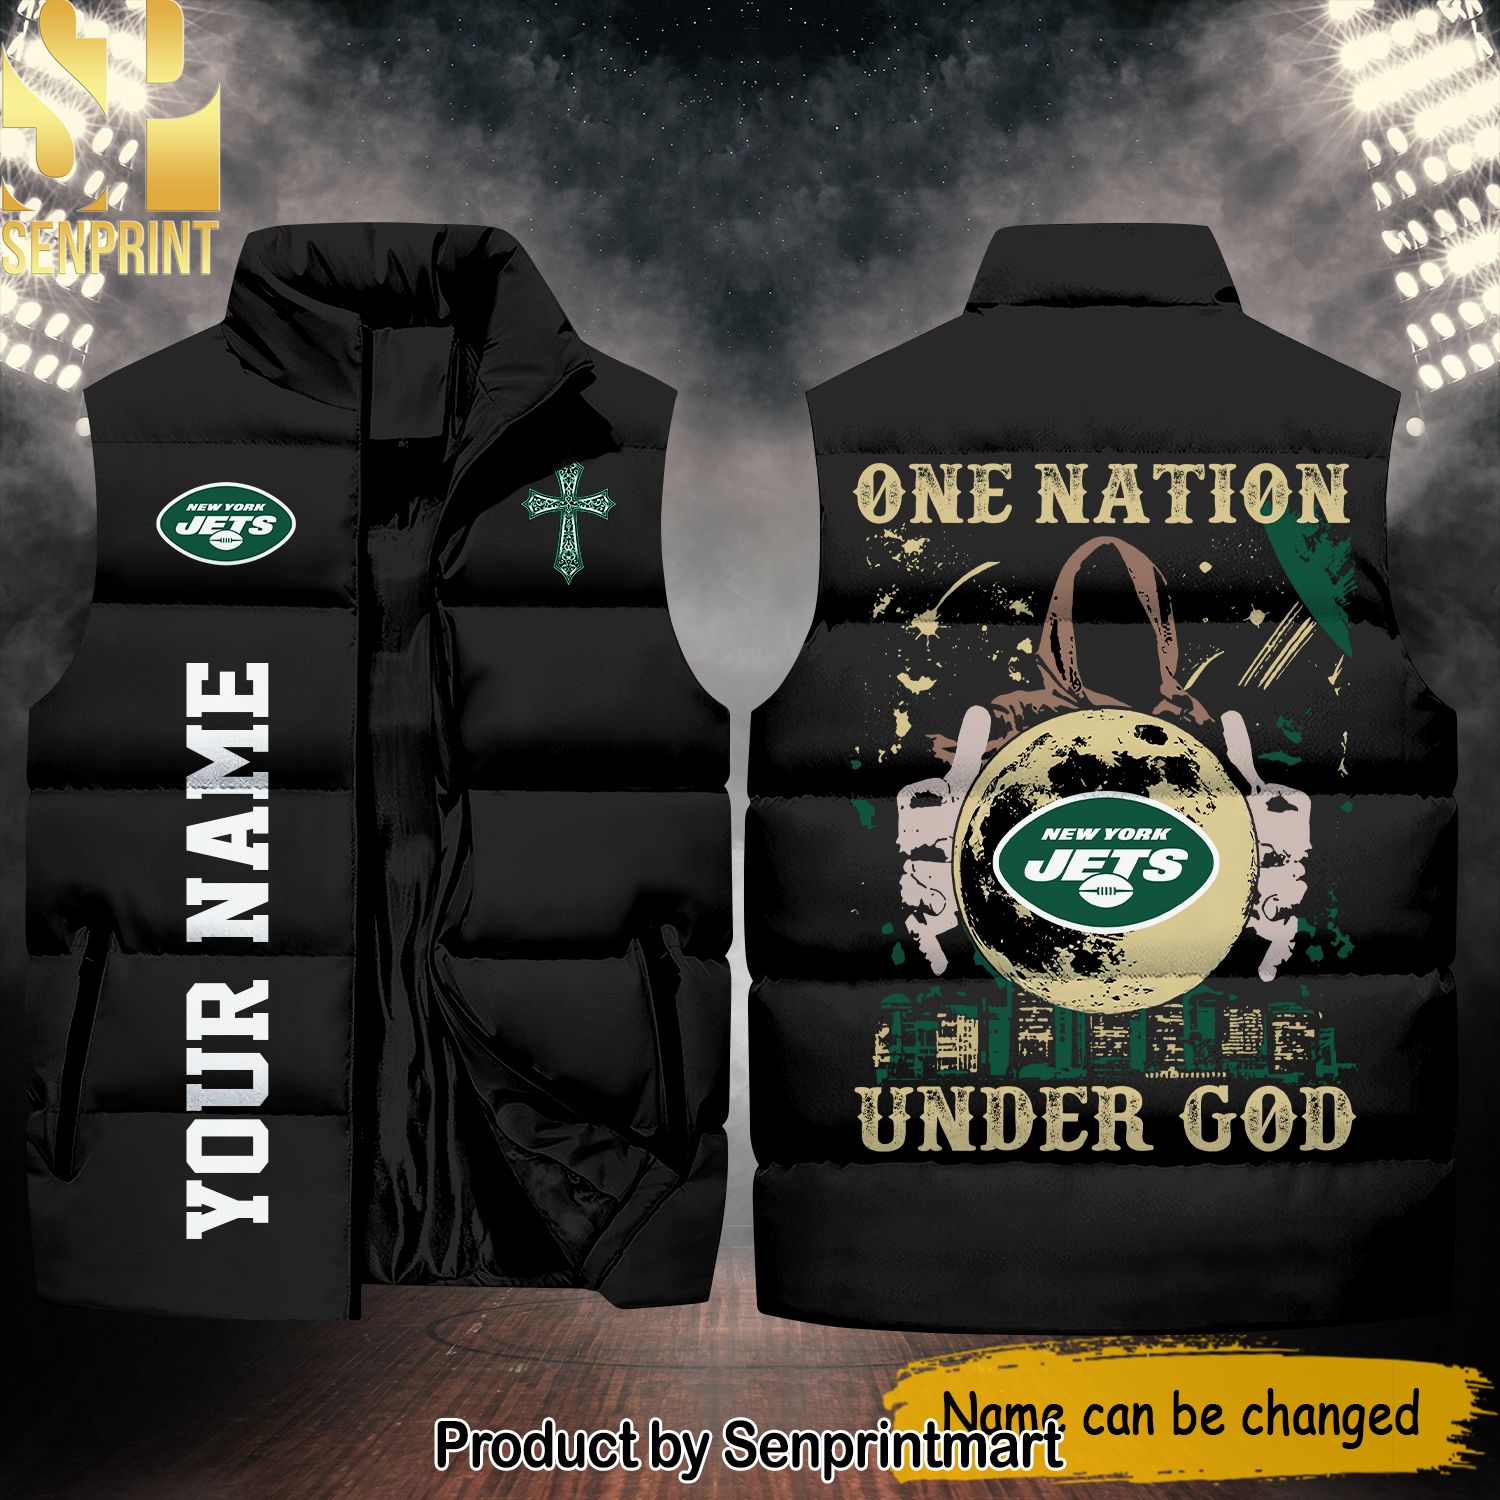 National Football League New York Jets One Nation Under God Unisex Sleeveless Jacket